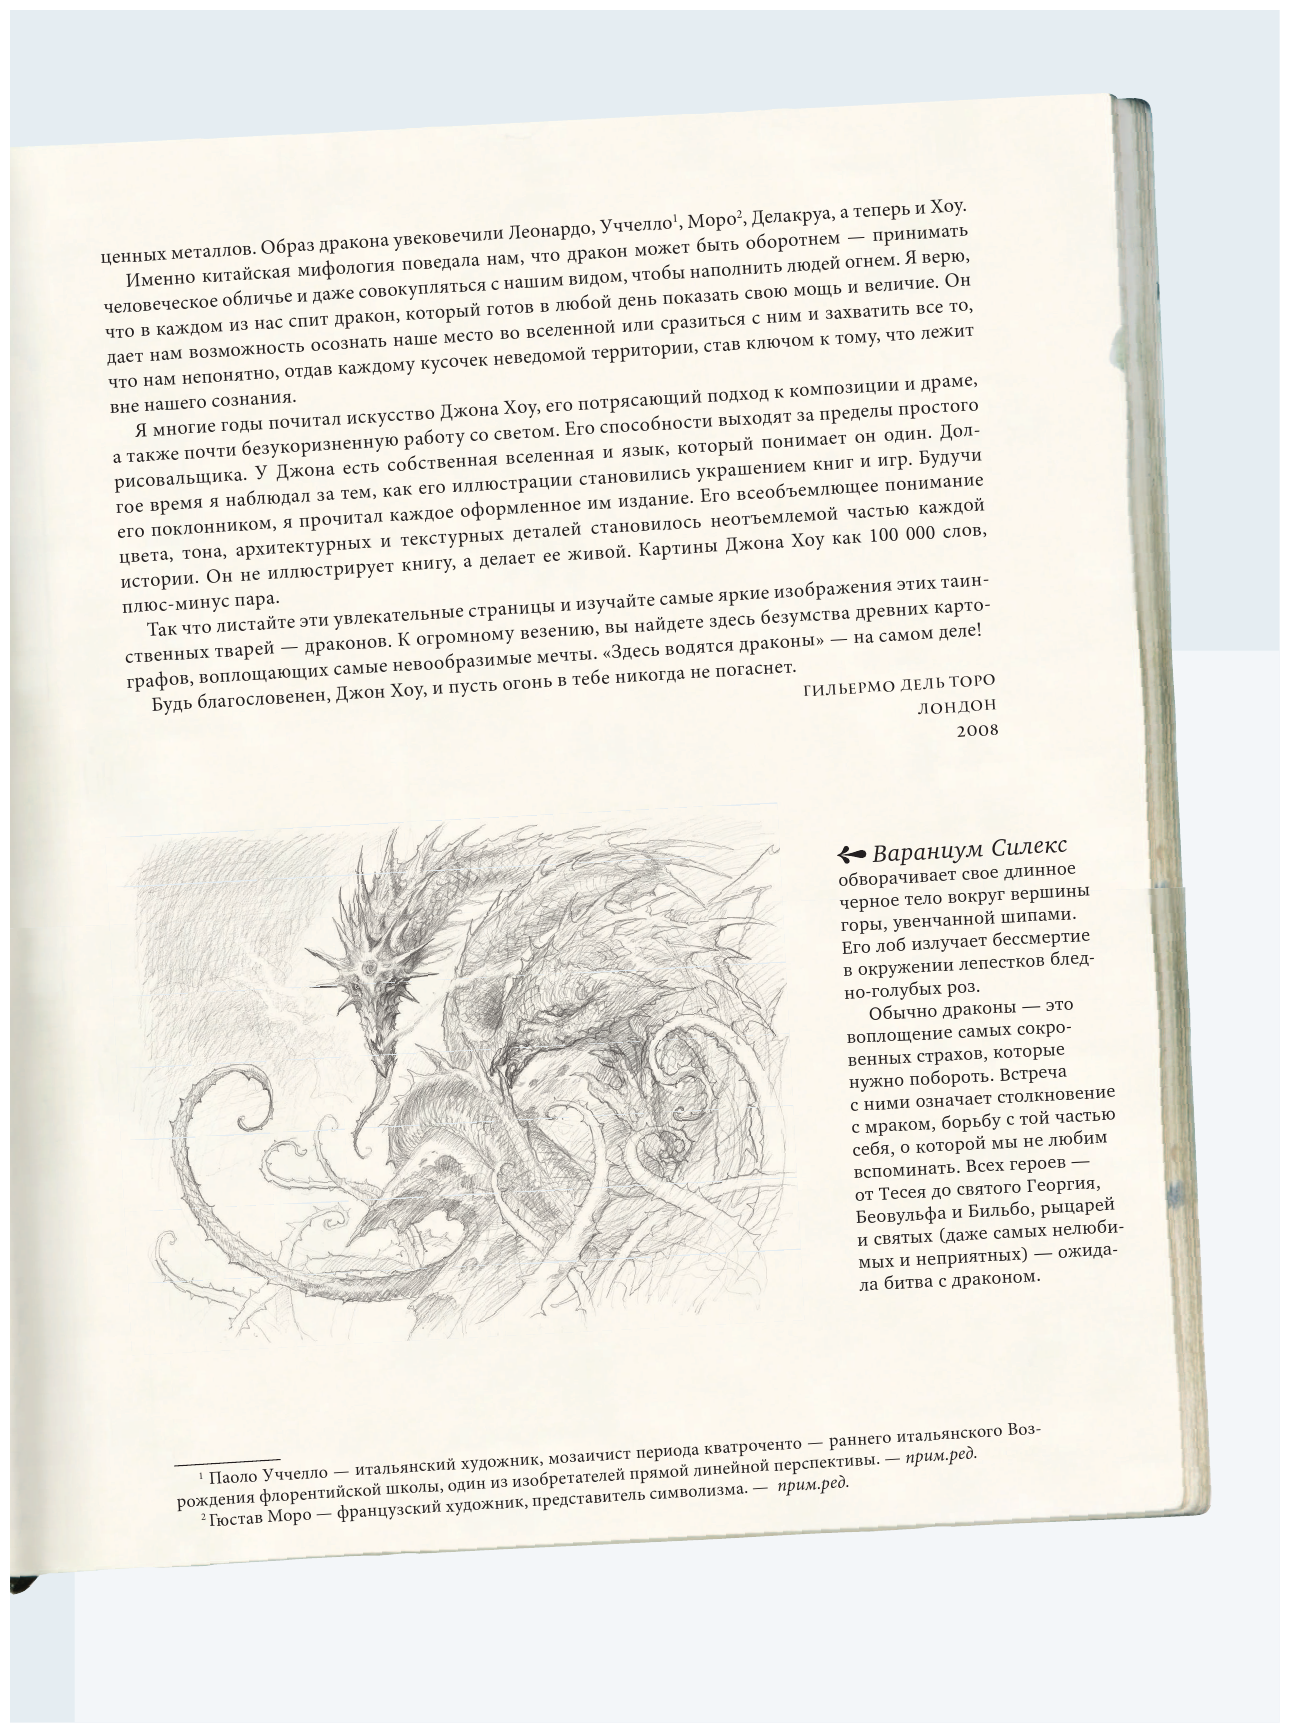 Создавая драконов. Руководство по рисованию главных мифических существ от концепт-художника "Властелина колец" - фото №9